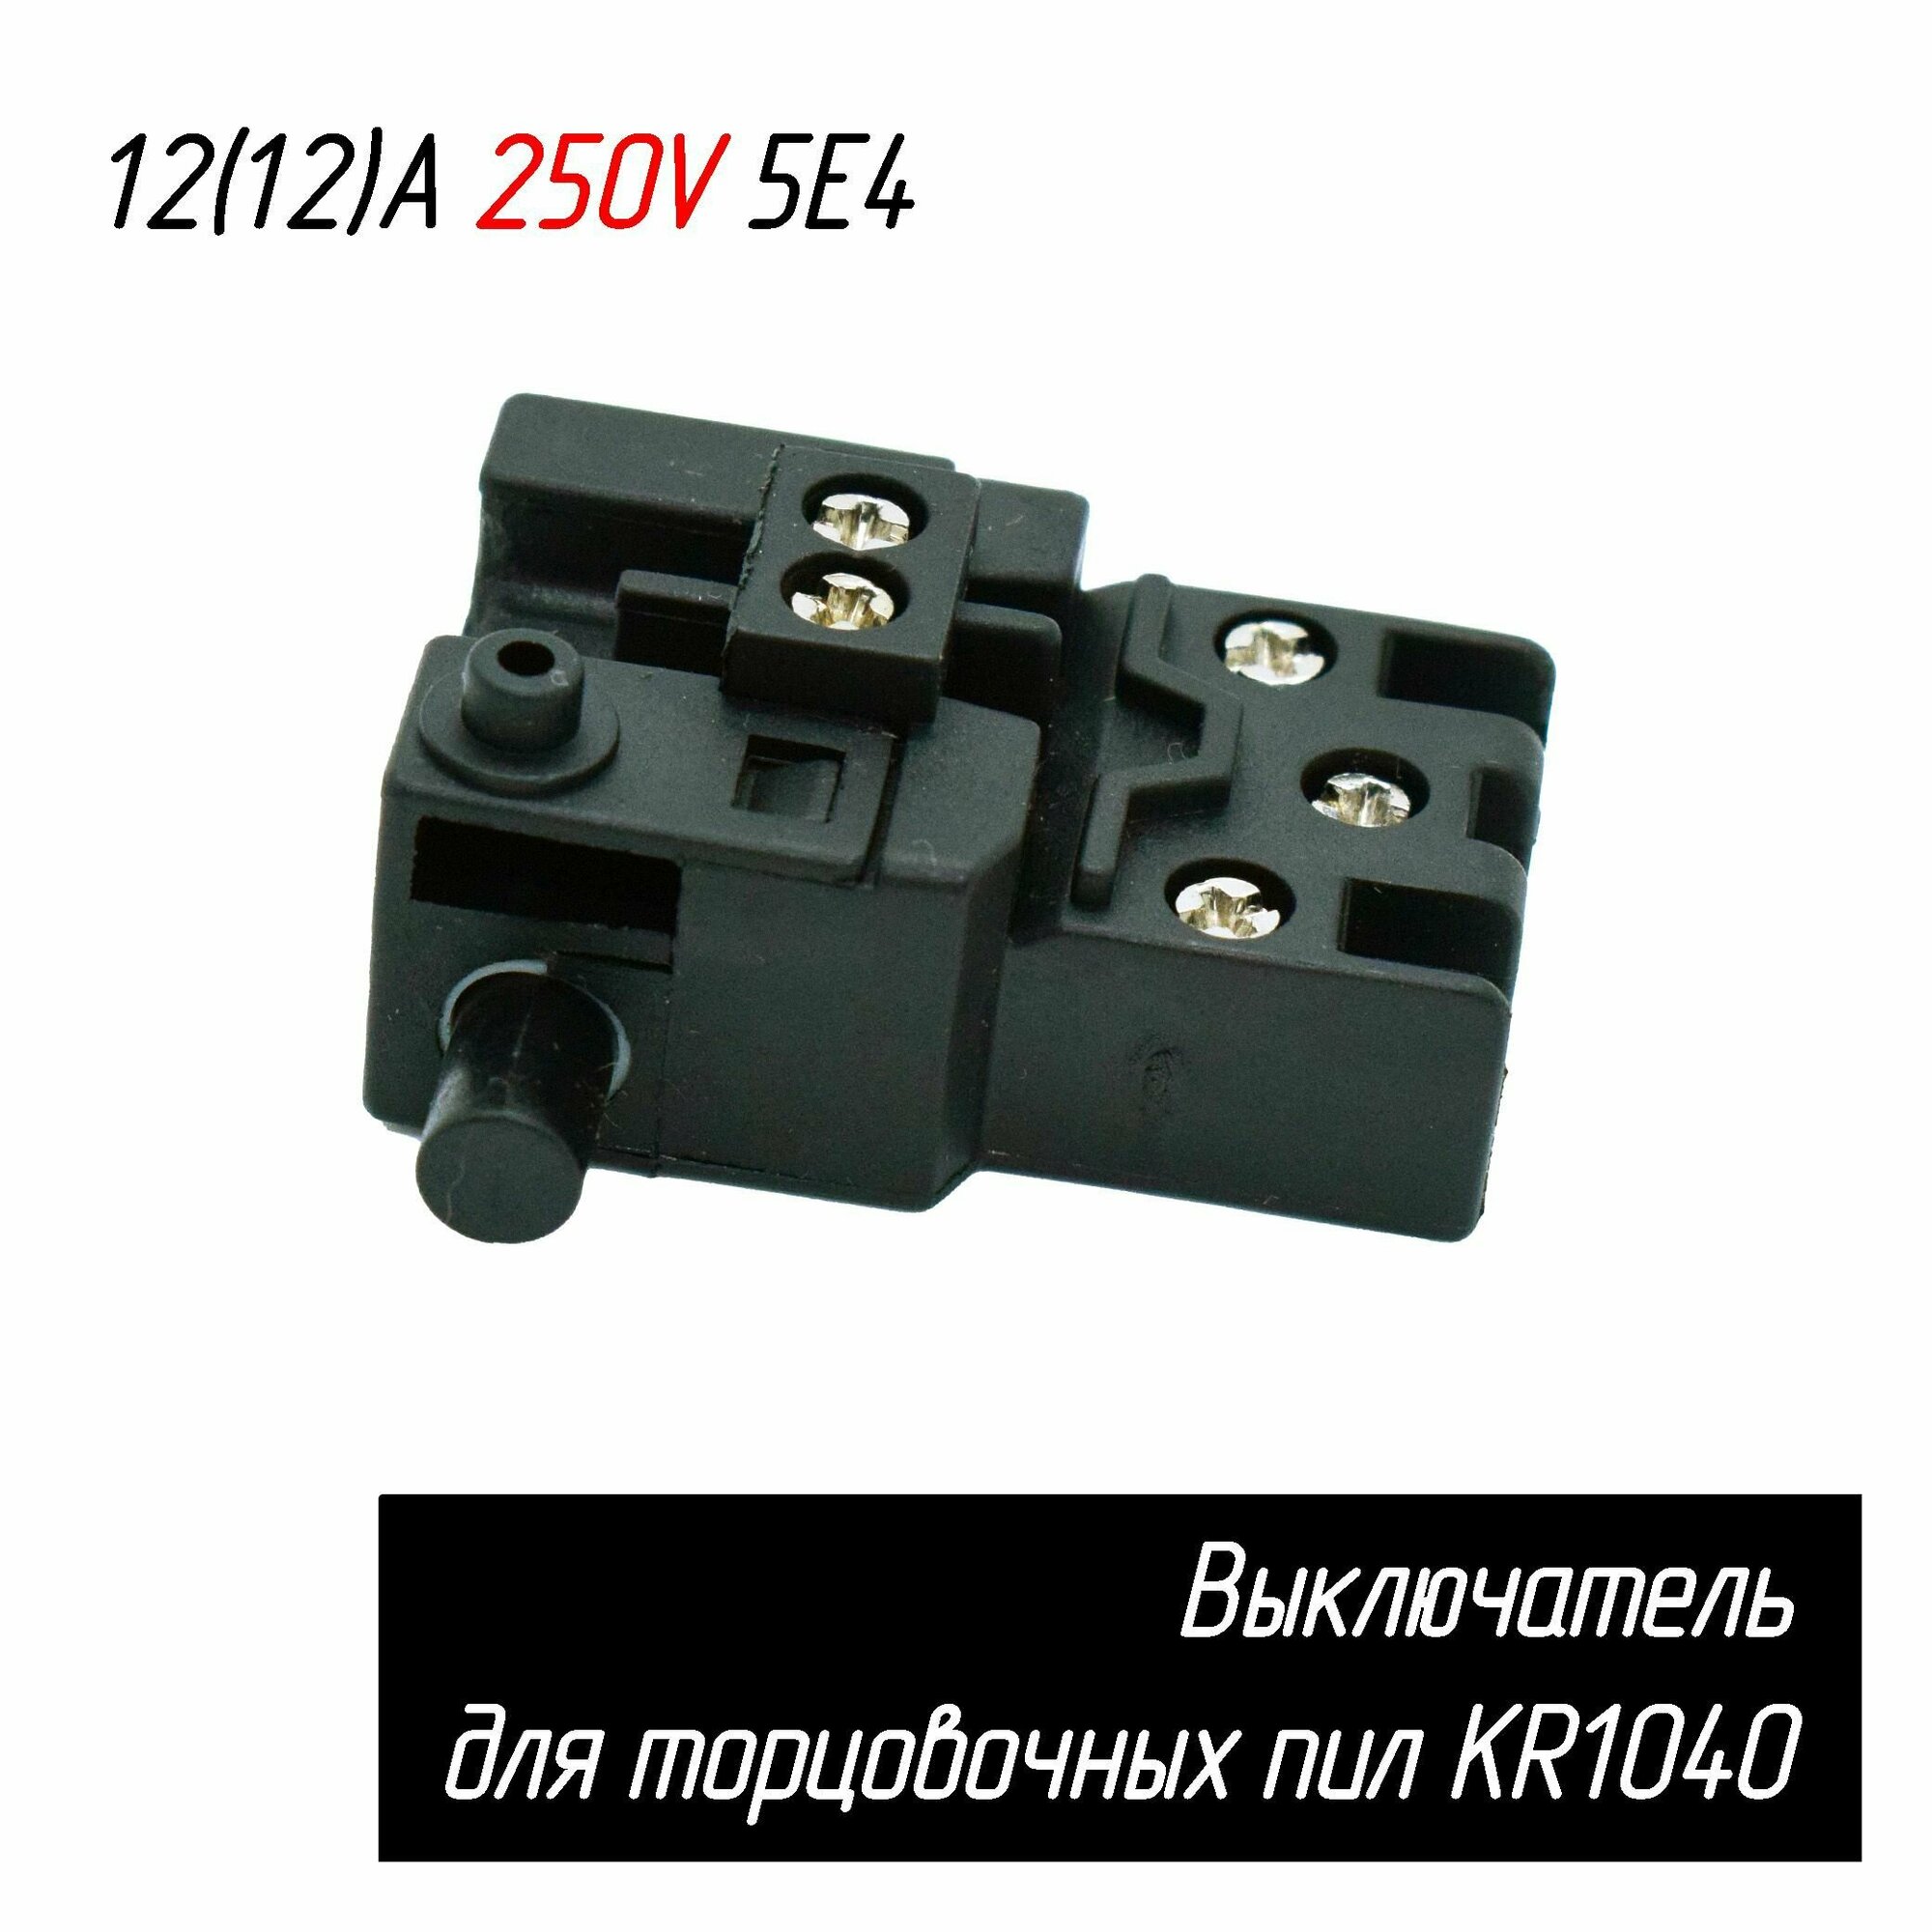 Выключатель KR1040 12(12)A 250V 5E4 для торцовочных пил 5 контактов (ЗУБР ЗПТ-255-1800 ПЛР, Корвет 2, 4 Энкор и др.) AEZ